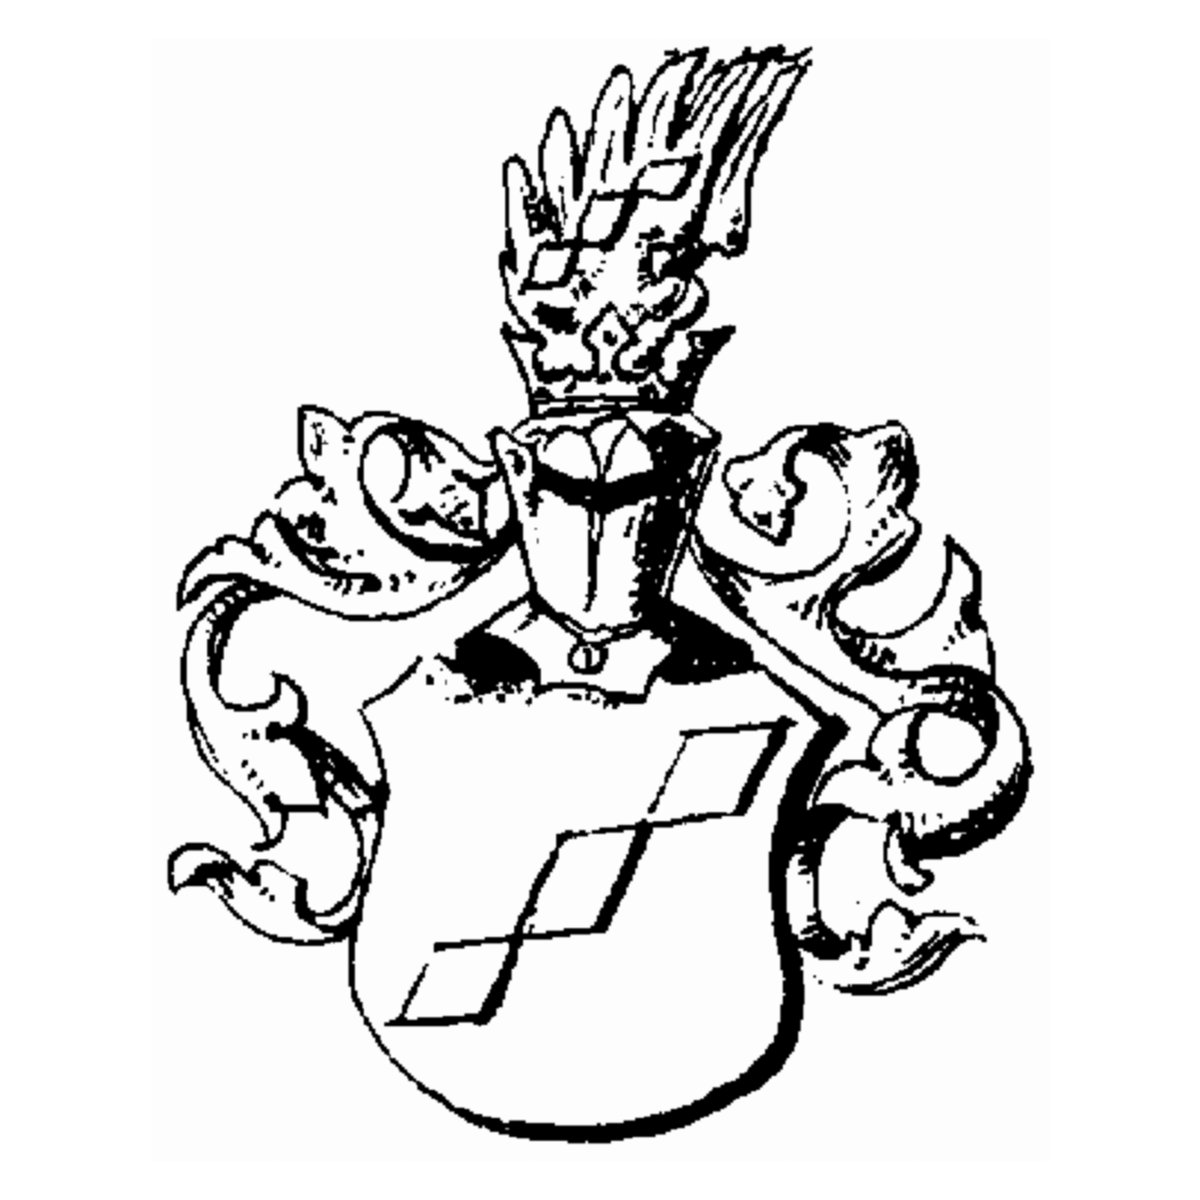 Escudo de la familia Stetfurt